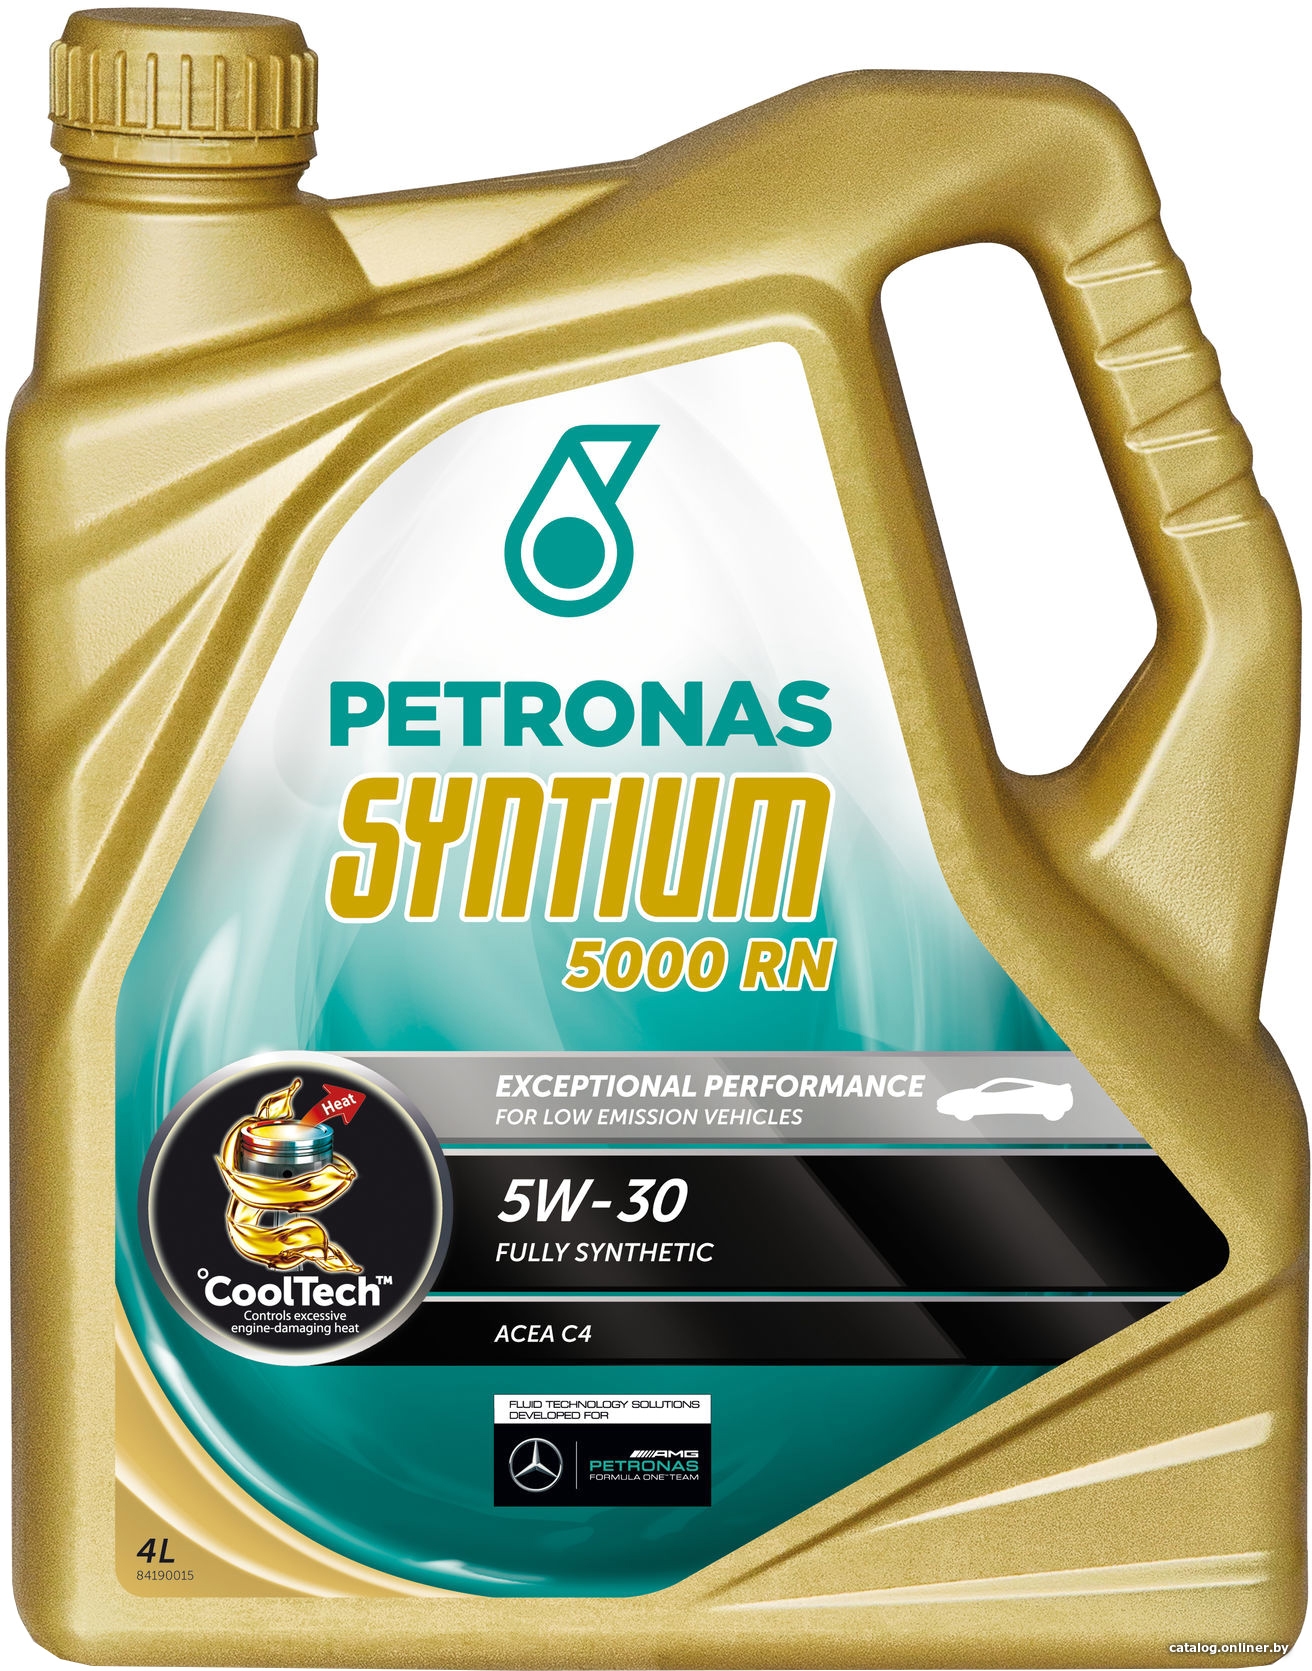 Масло моторное синтетическое - Petronas Syntium 5000 RN 5W-30 4л